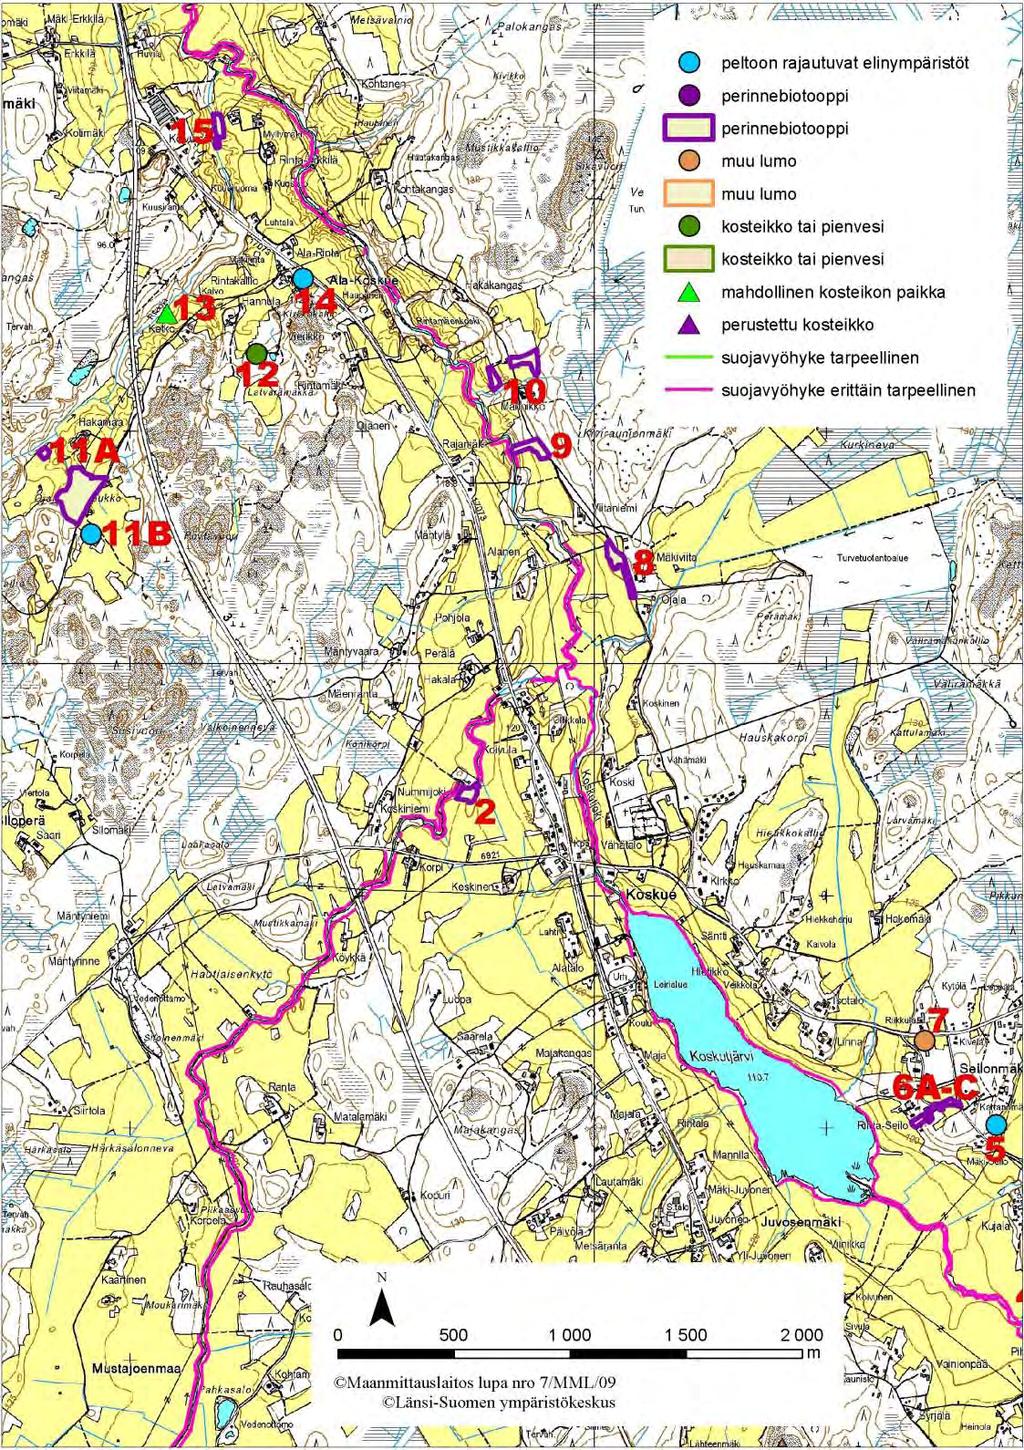 Kartta 2. Jalasjärven kohteen 2 sekä kohteiden 5-15 sijainti. Kohde 4: Mahdollinen kosteikon paikka (kartta 1, s. 17) Oja kiertää Toukkalanmäen ja laskee peltojen halki Niskaluomaan.